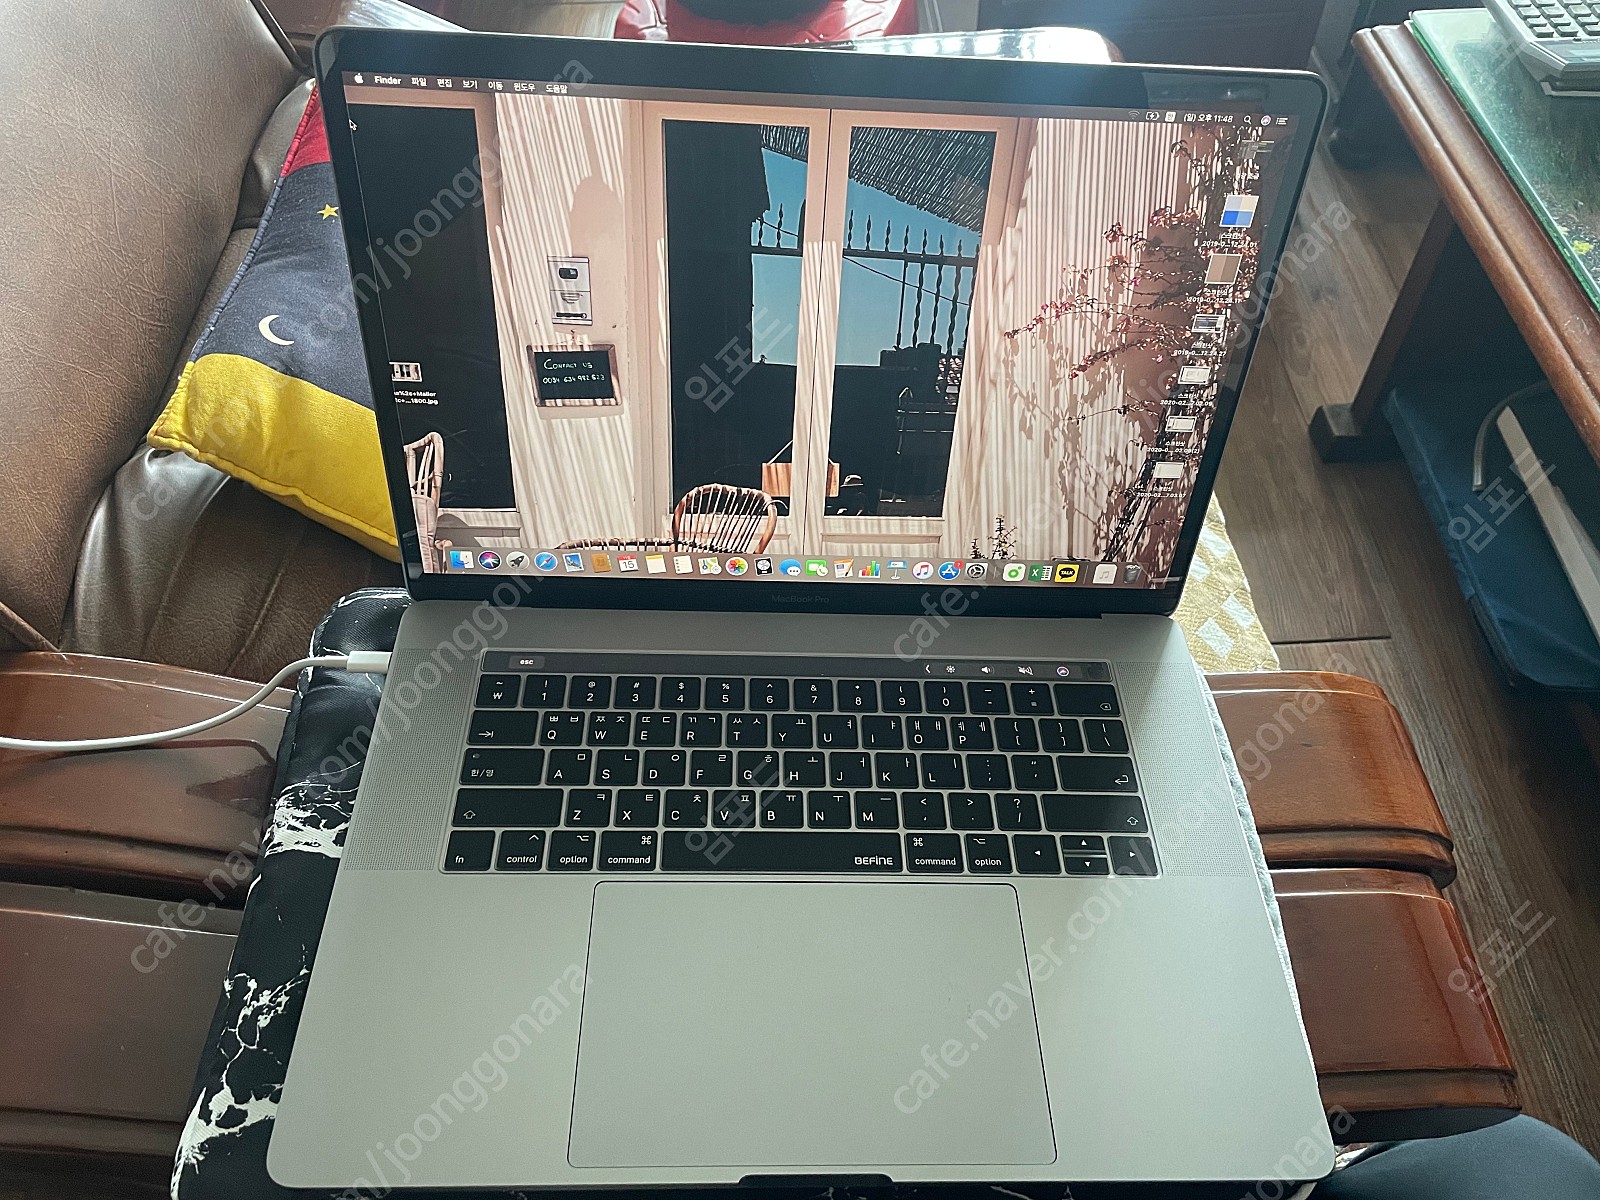 2019 맥북 프로 15인치 고급형 스페이스그레이 MV912KH/A 판매